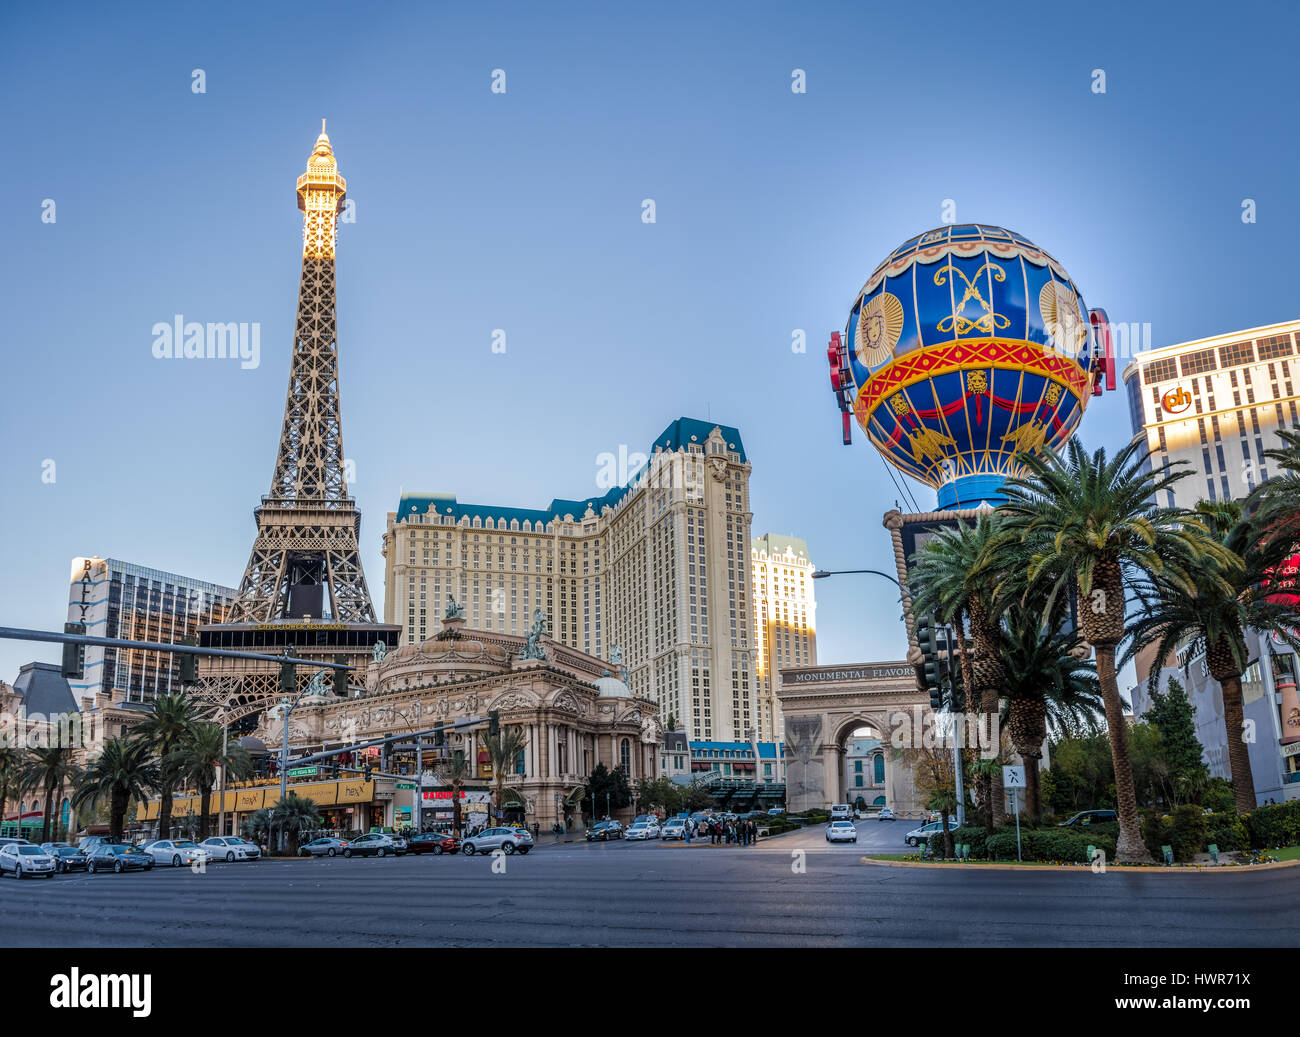 Las Vegas Strip and Paris Hotel Casino - Las Vegas, Nevada, USA Stock Photo